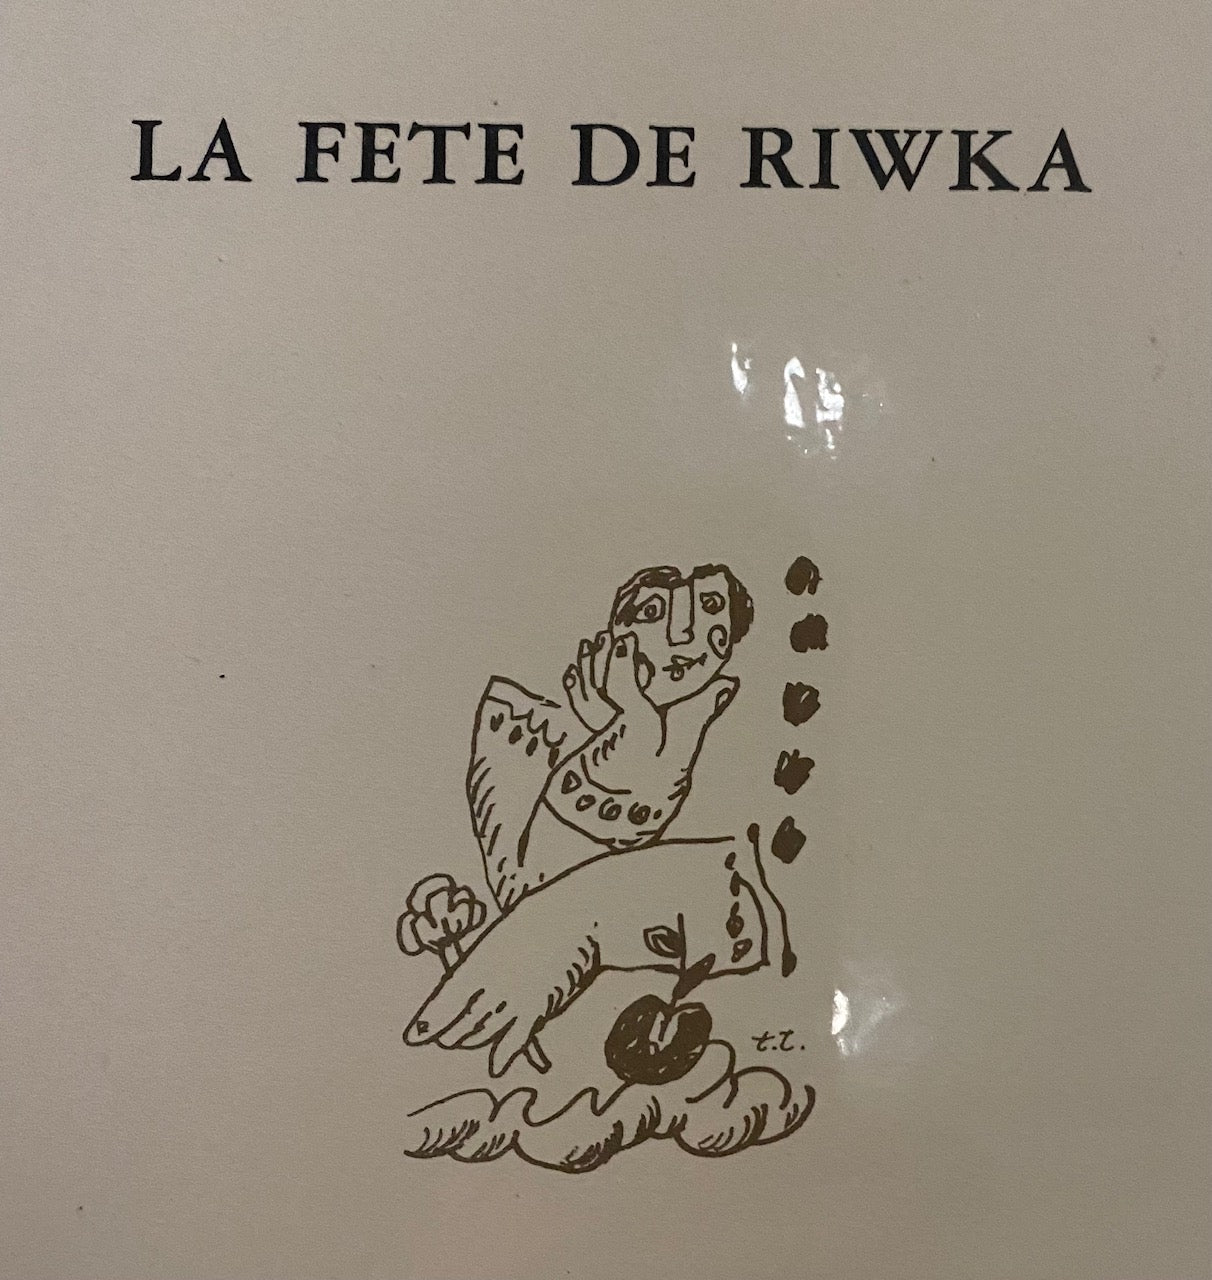 Theo Tobiasse | Le temps où se reflète la vie des bommes, Iš rinkinio La fête de Riwka, 1989 | Litografija, 98/99